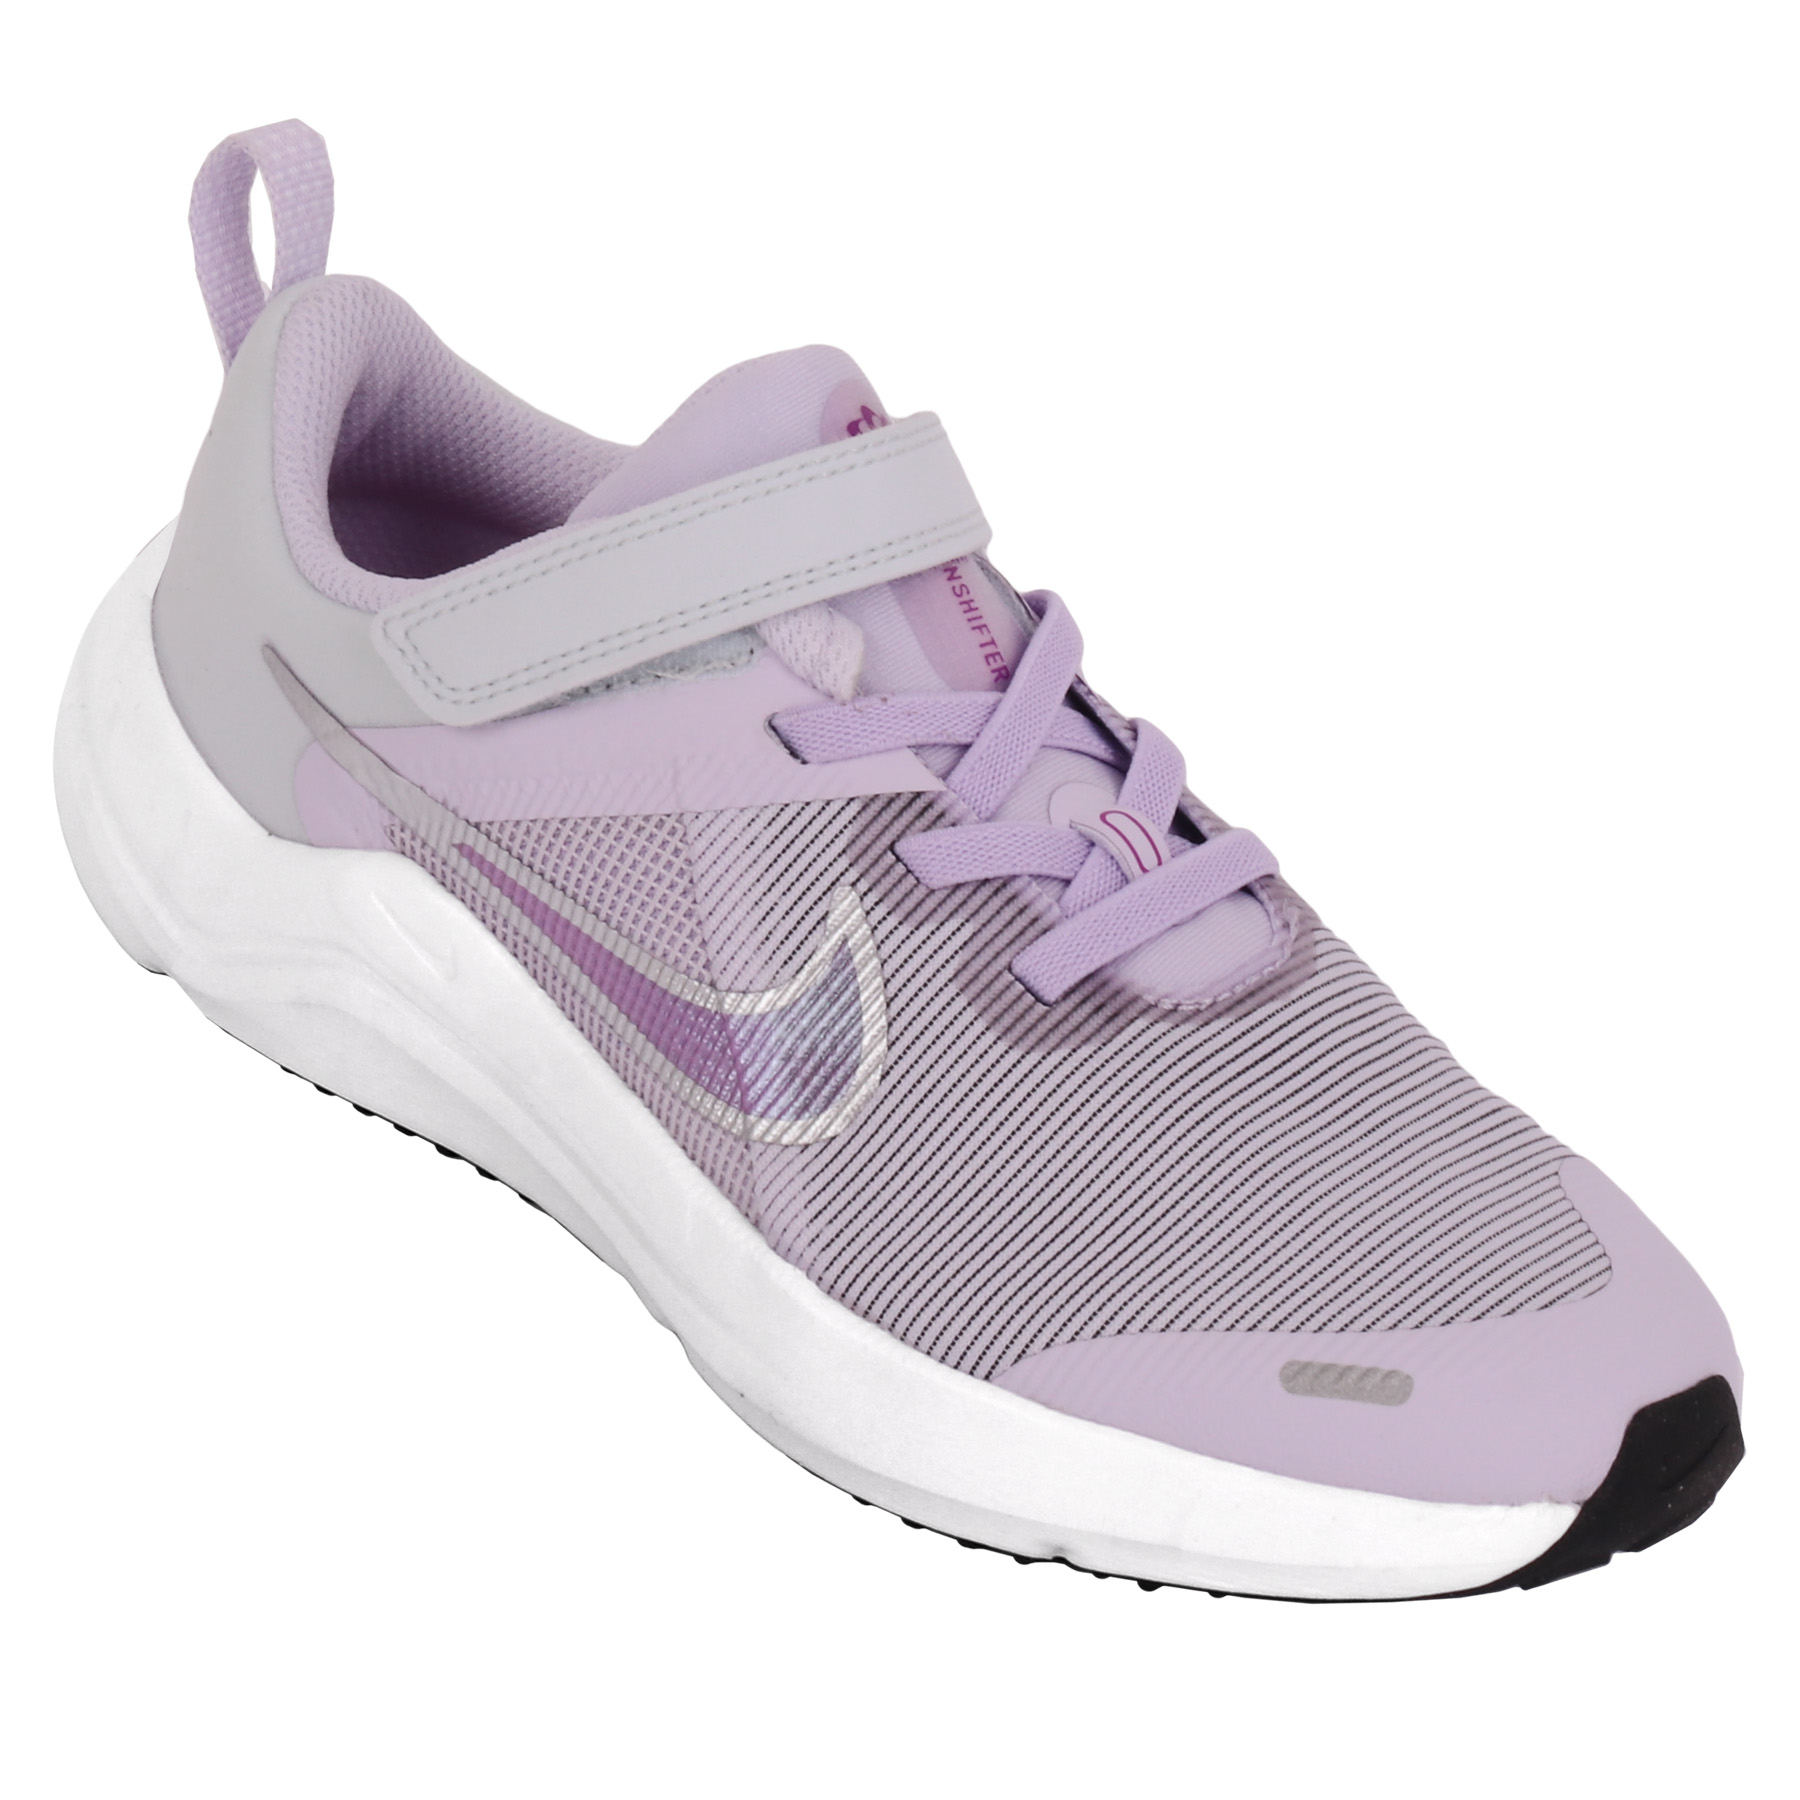 Immagine di Nike Scarpe Bambini - Downshifter 12 - violet frost/metallic silver DM4193-500